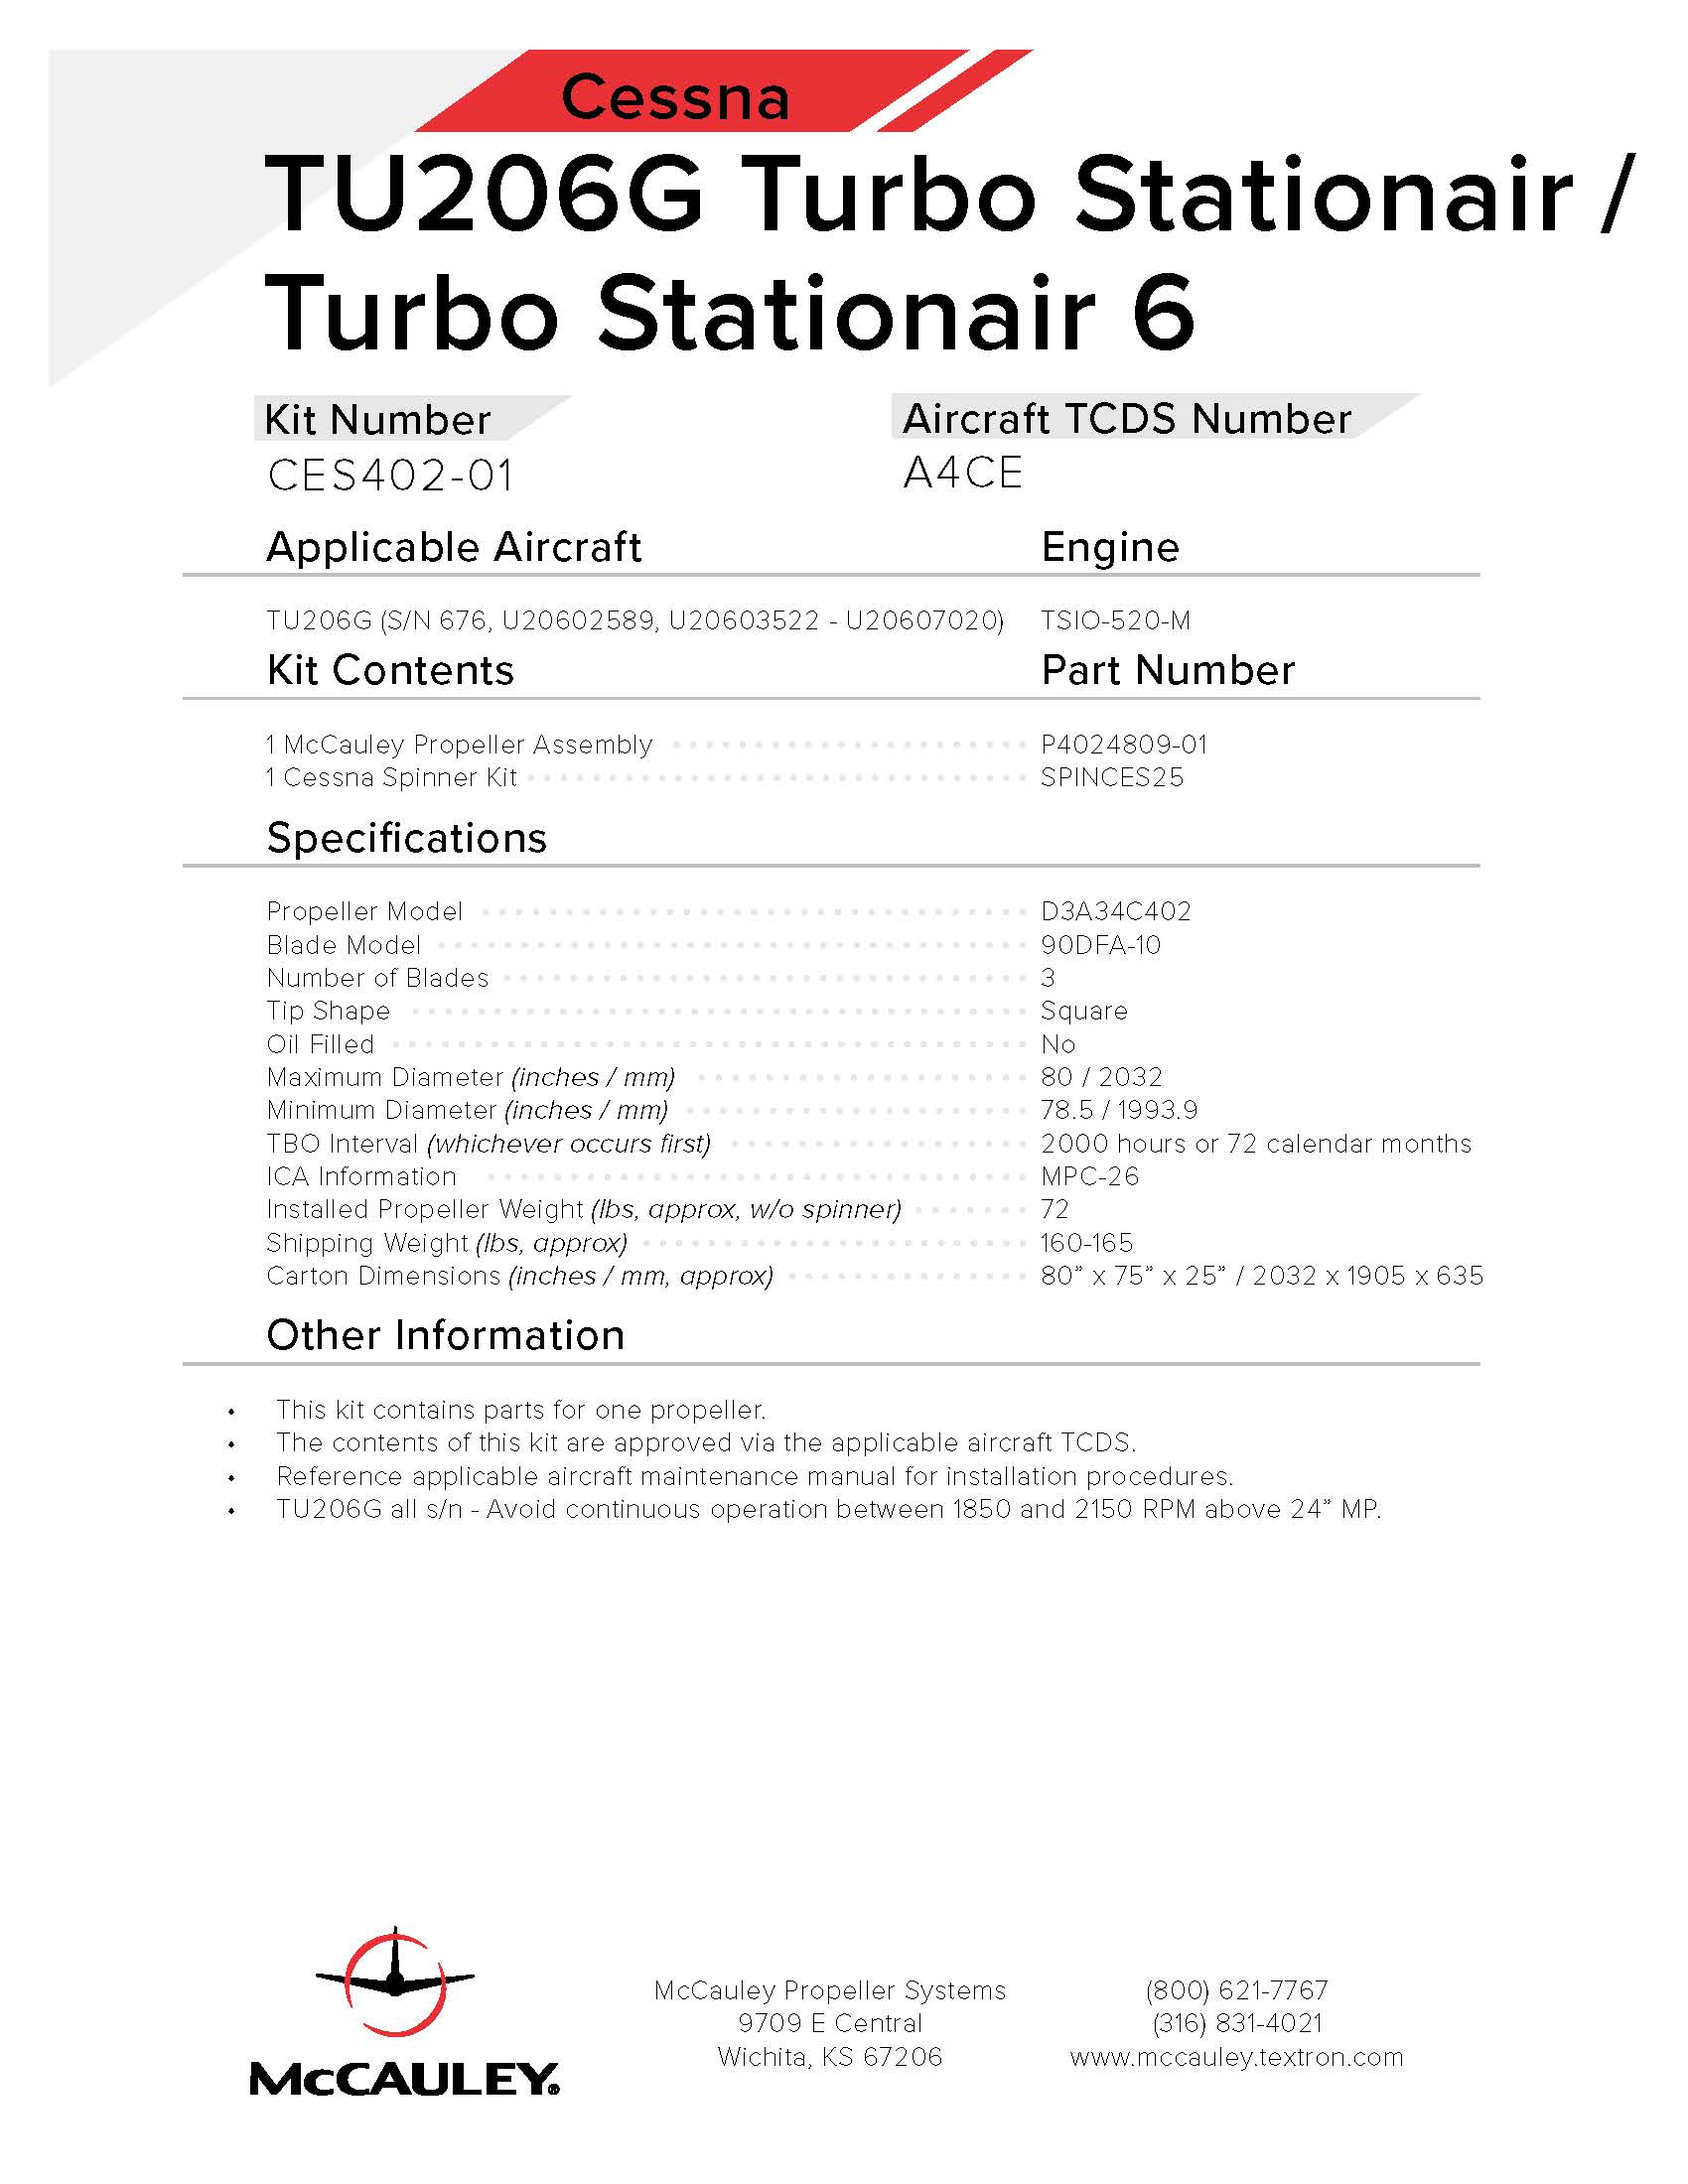 CESSNA-TU206G-TURBO-STATIONAIR-6-CES402-01-PAGE-1